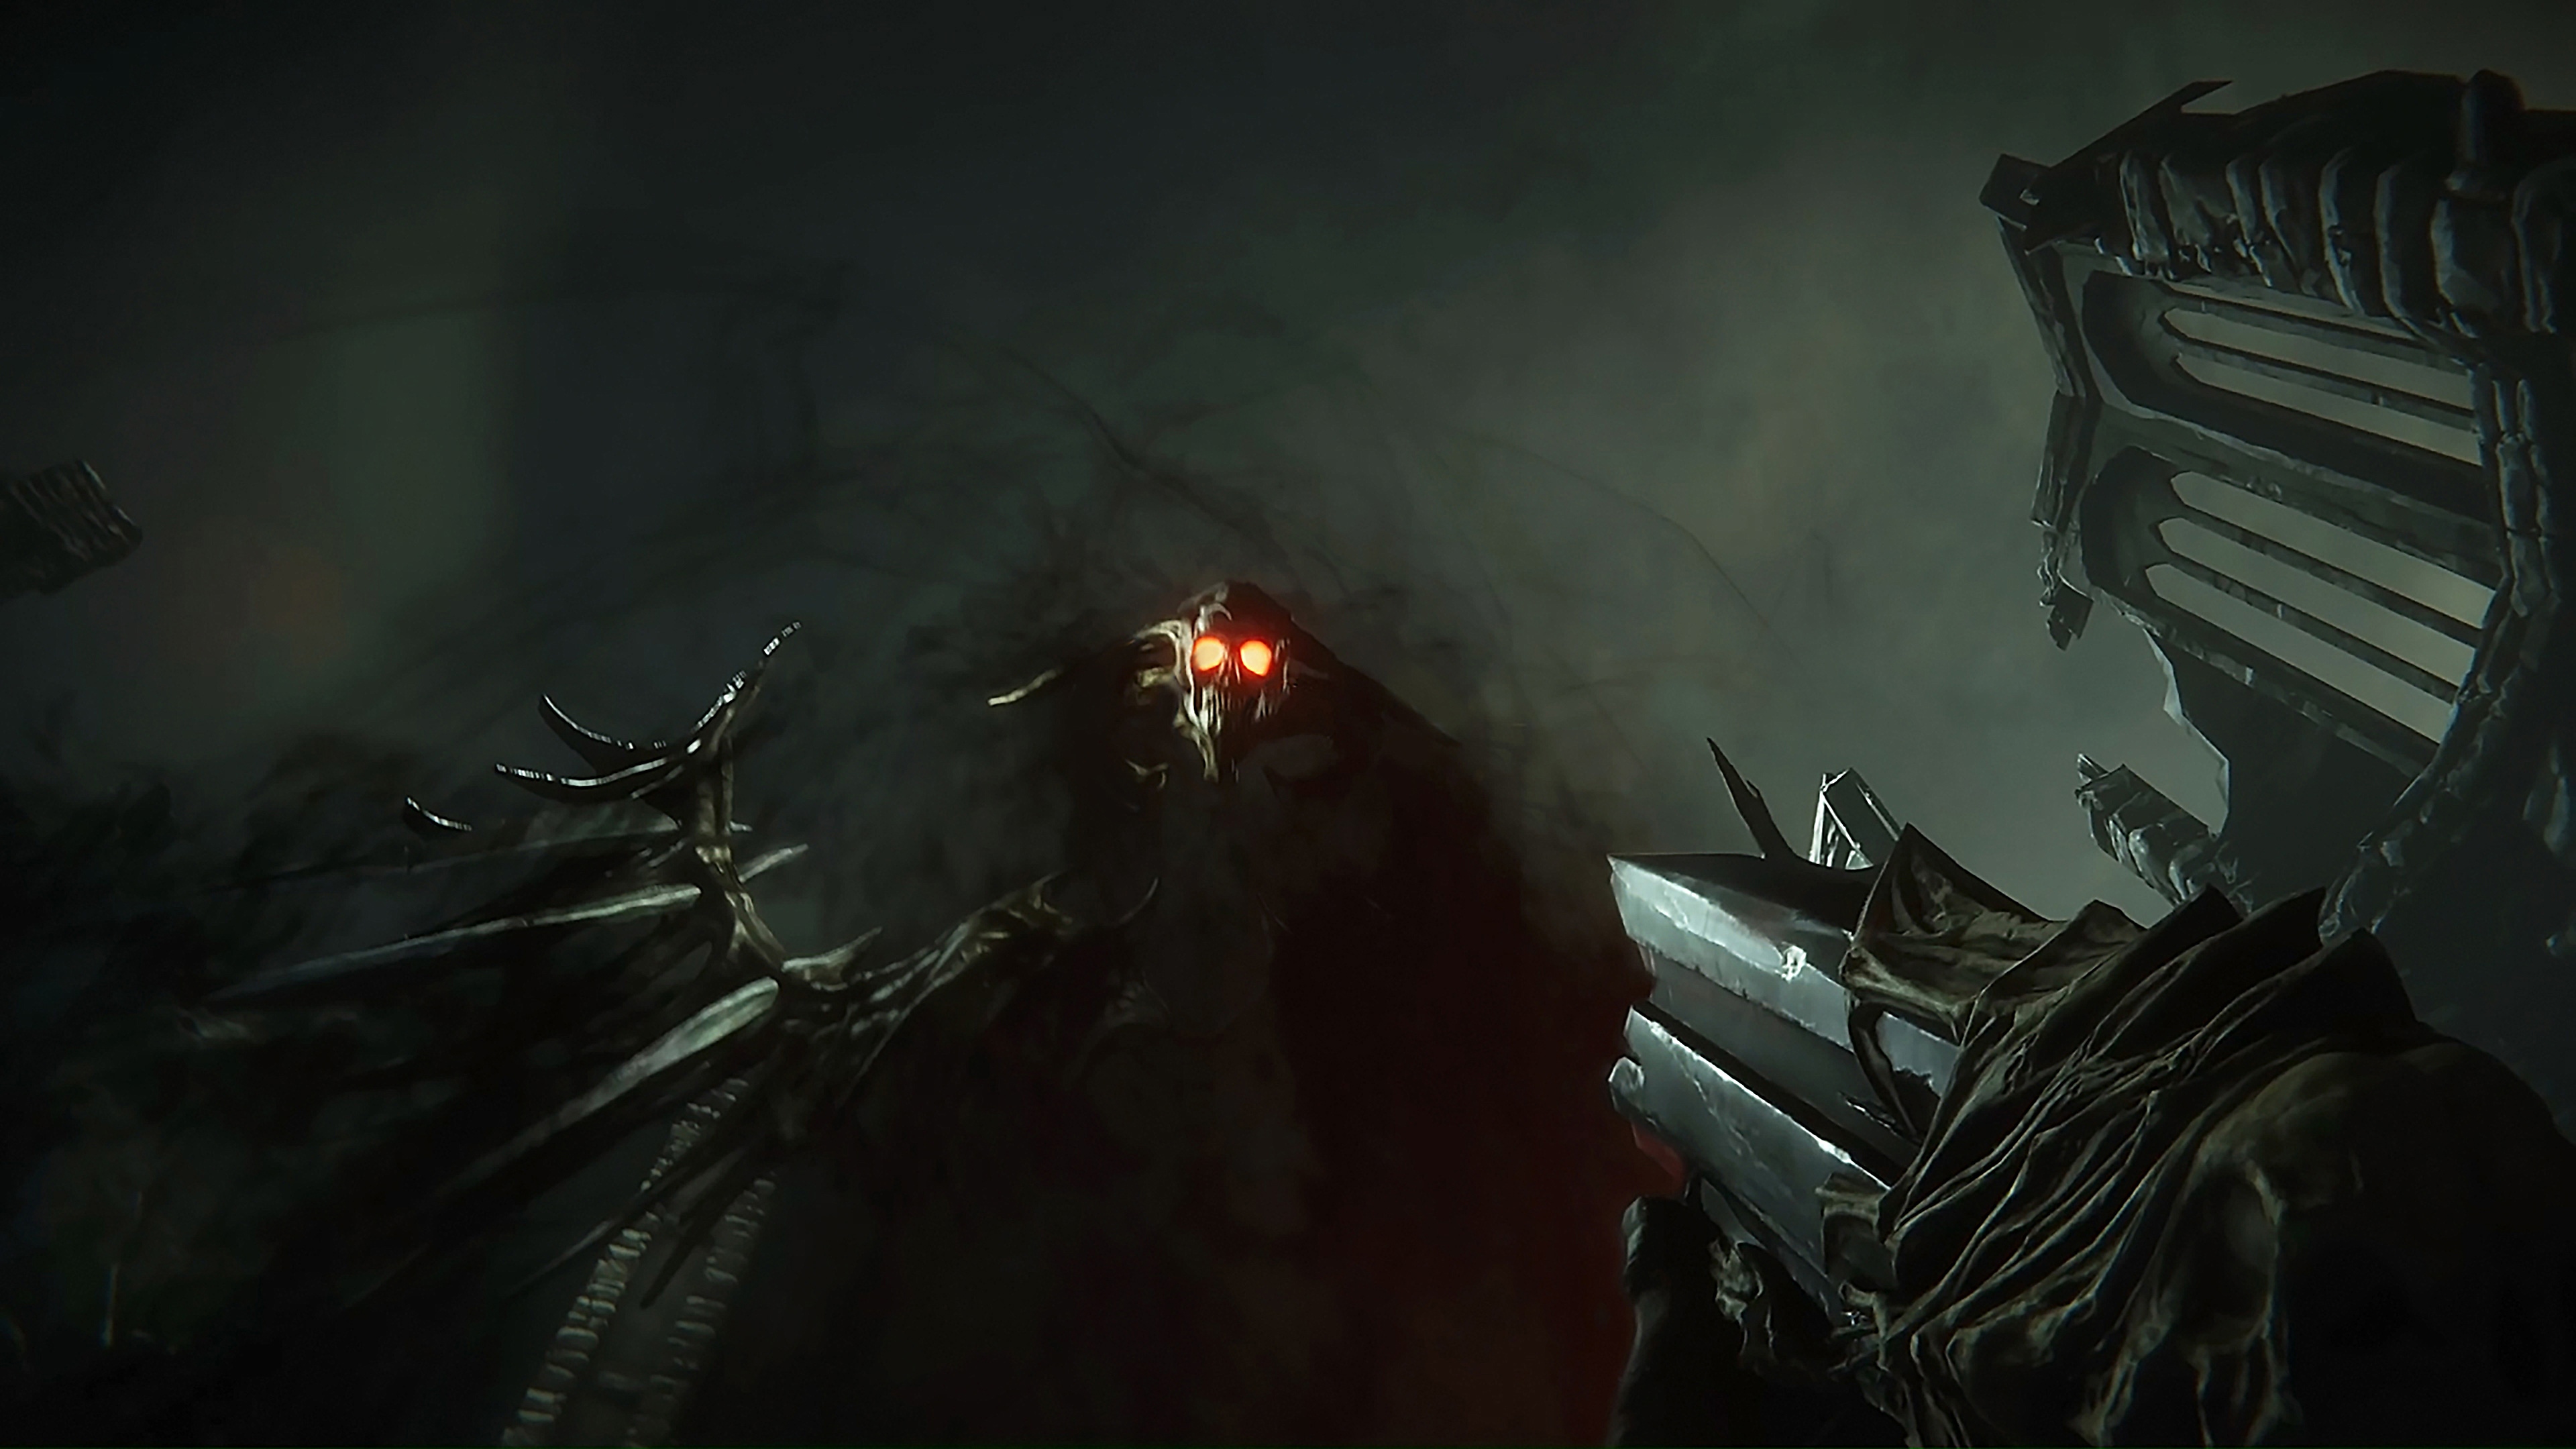 Captura de pantalla de Metal: Hellsinger que muestra a un demonio similar al humo, con cara de calavera